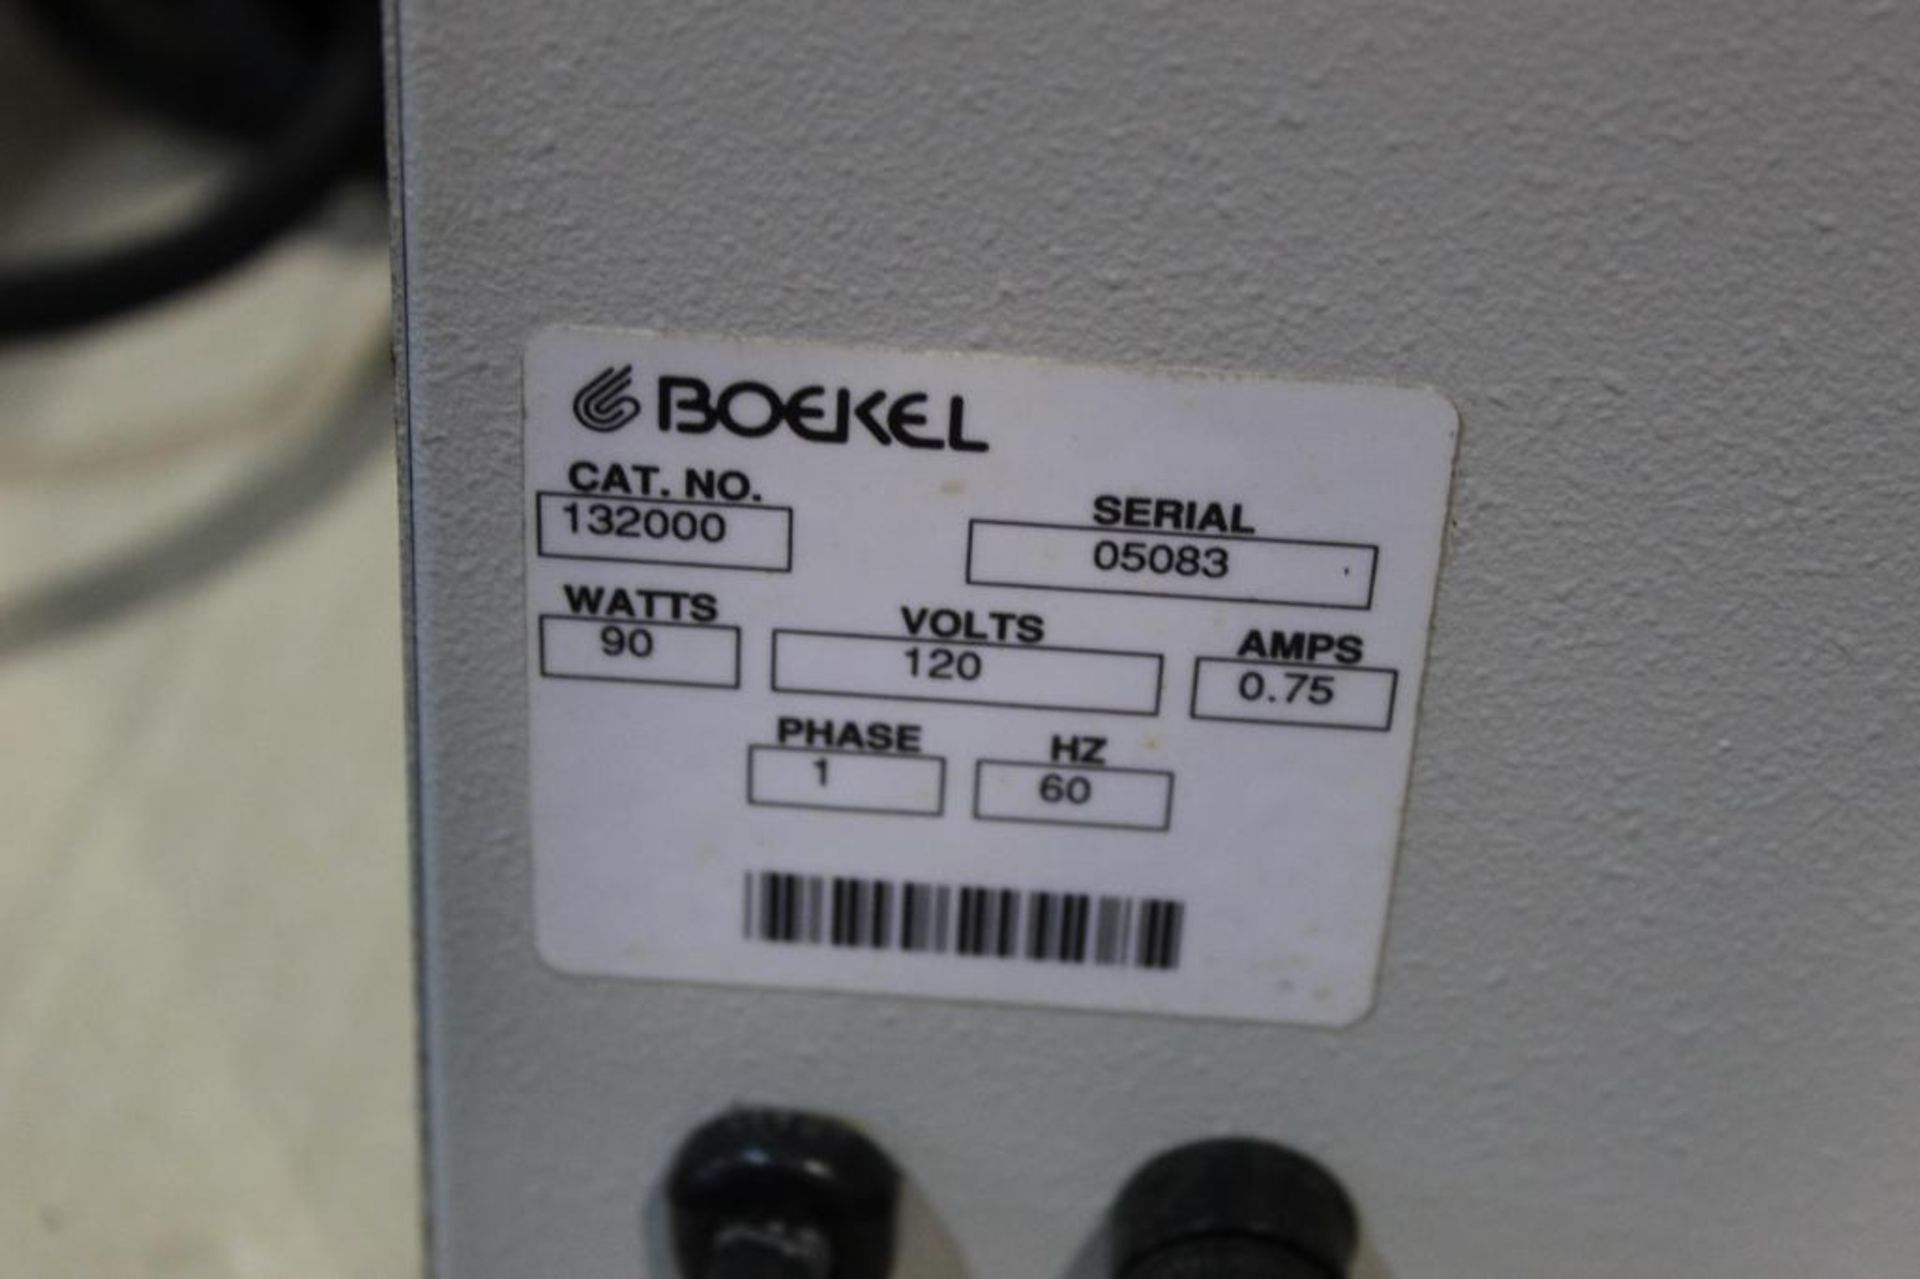 Boekel Oven Model 132000 - Image 6 of 6